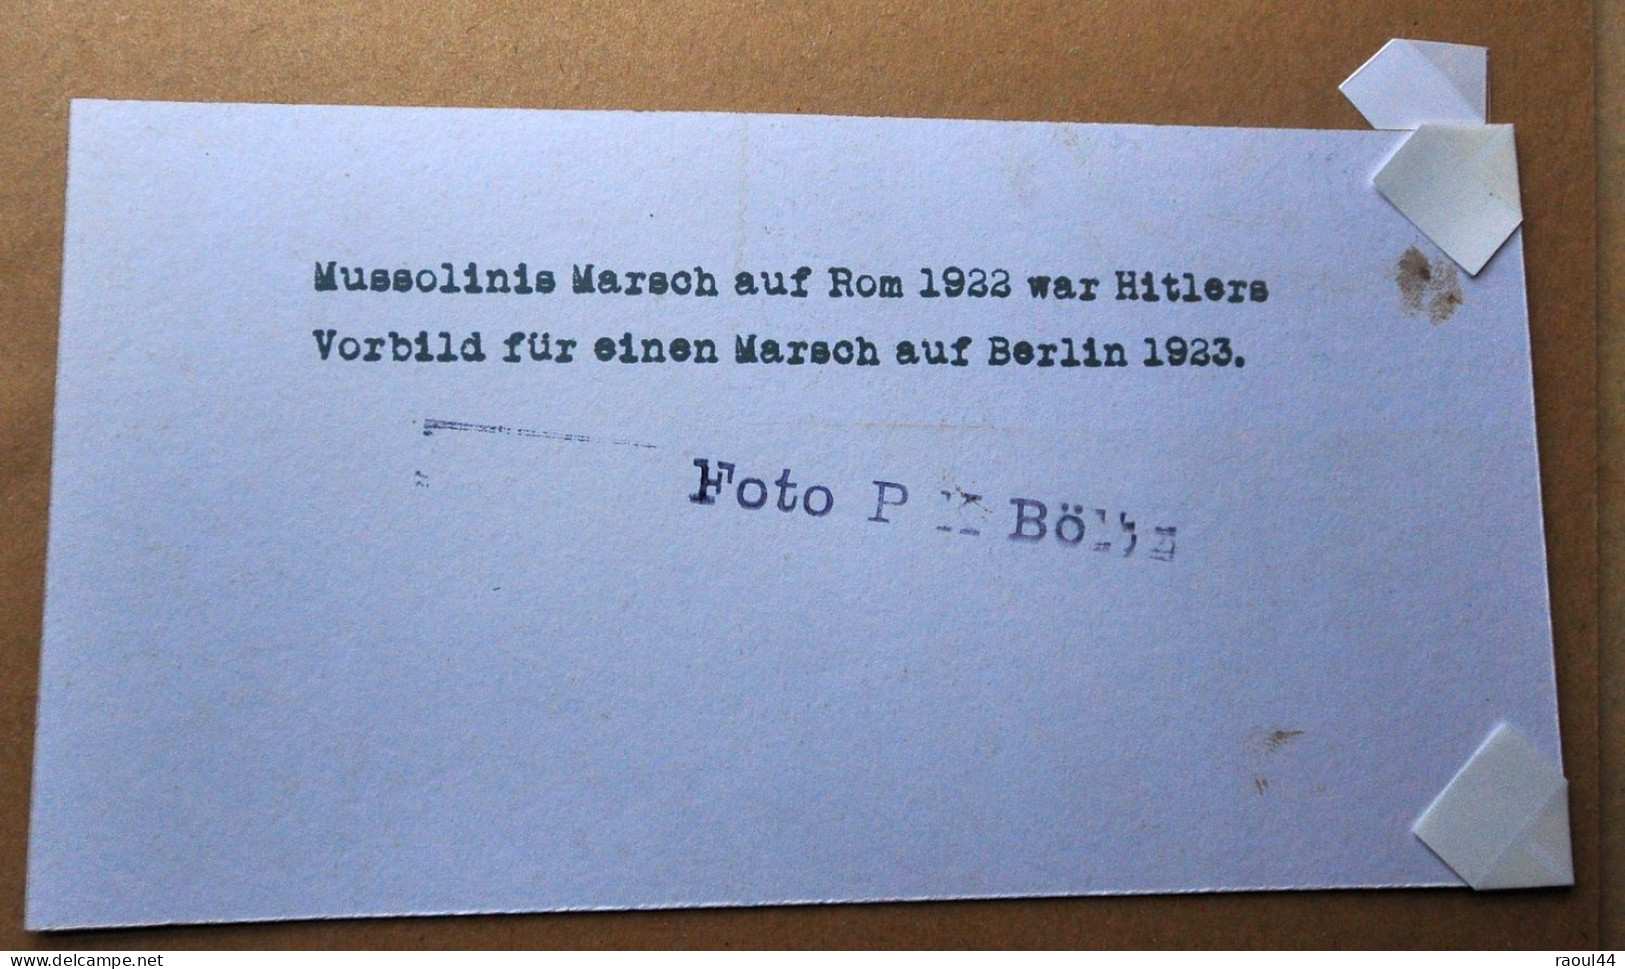 WW2 Médaille  'Auf nach Berlin' à la mémoire du 'Hitlerputsch' + photo's + dépliant